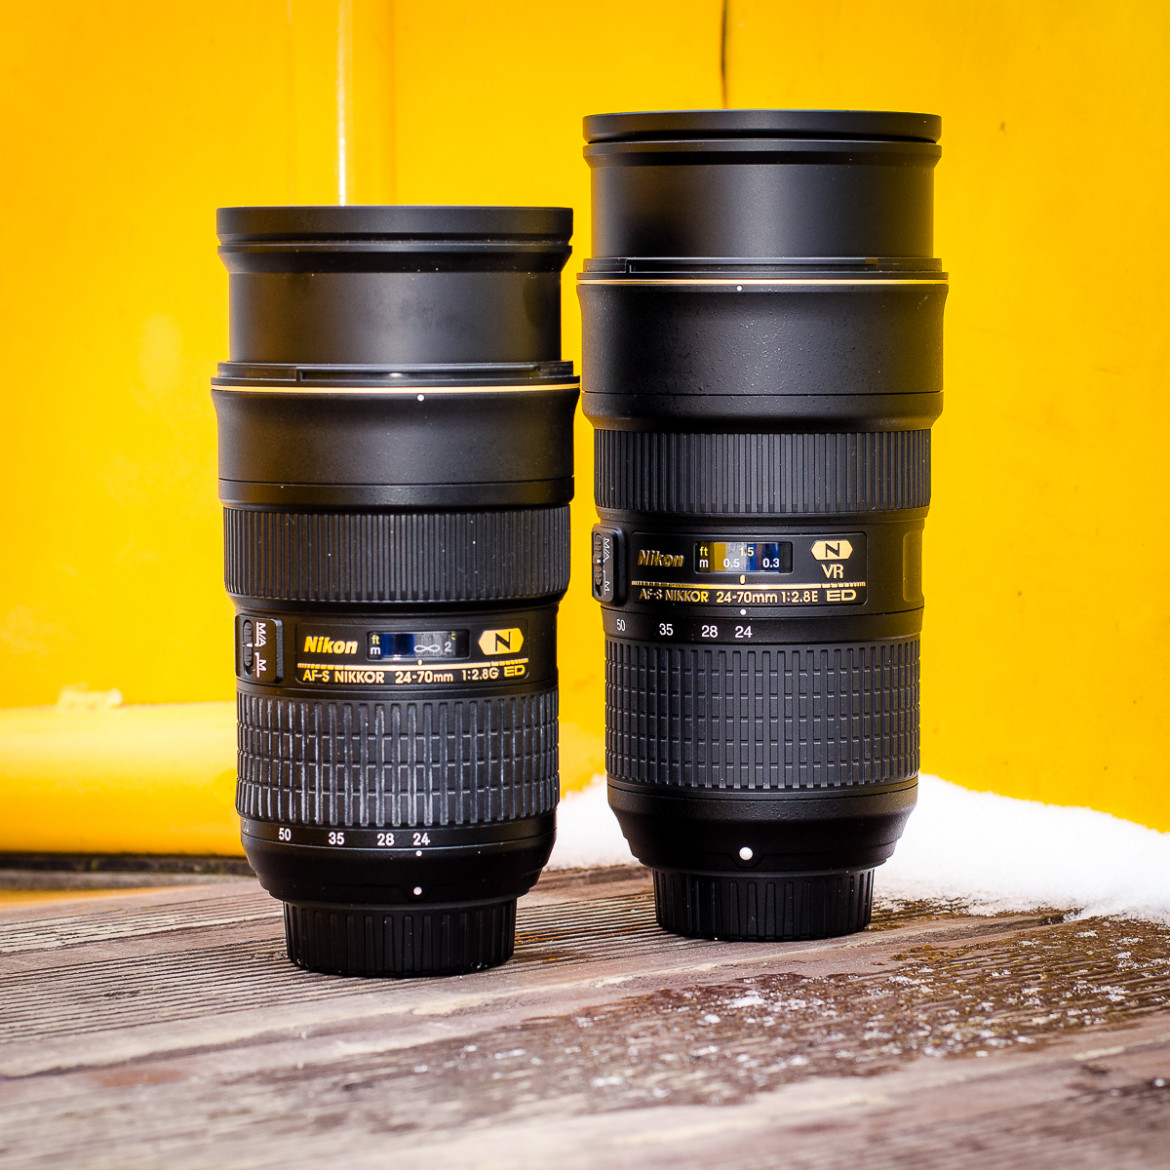 Nikon AF-S Nikkor 24-70 mm f/2.8 ED (po lewej) vs Nikon AF-S Nikkor 24-70 mm f/2.8 ED VR (po prawej)